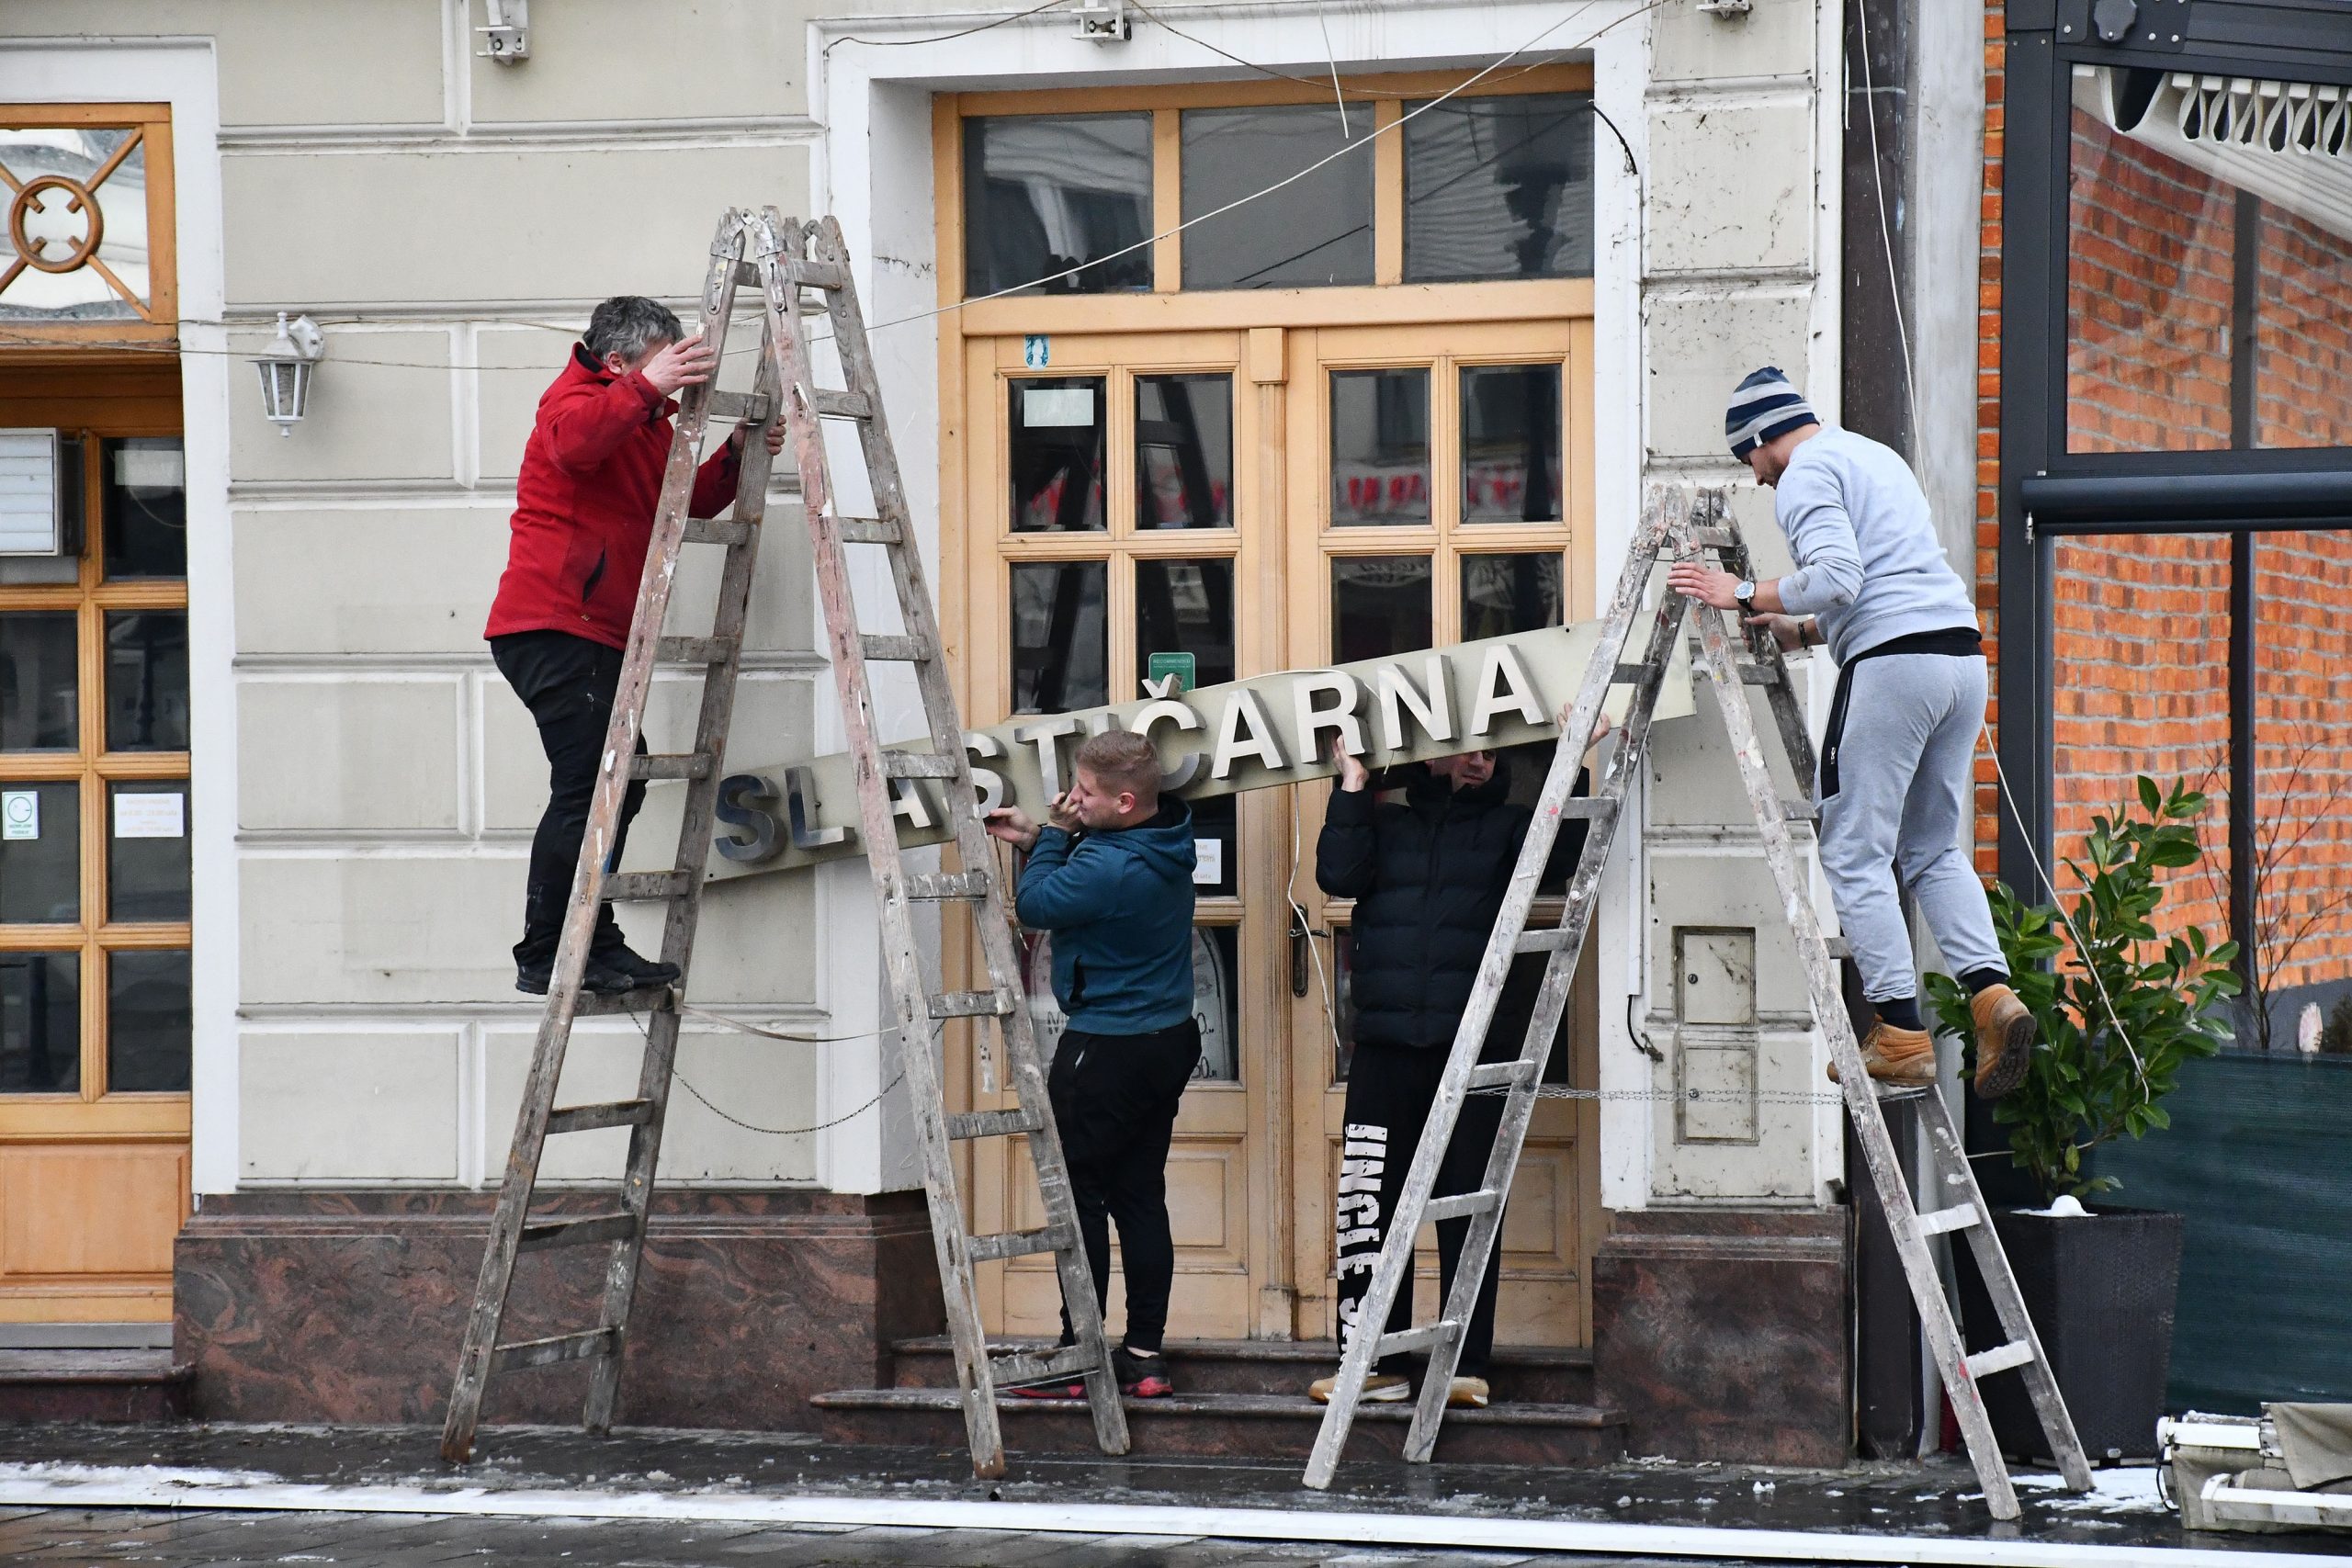 14.01.2021., Slavonski Brod - Ugostitelji uredjuju lokale kako bi bili spremni do ponovnog otvaranja. 
Photo: Ivica Galovic/PIXSELL